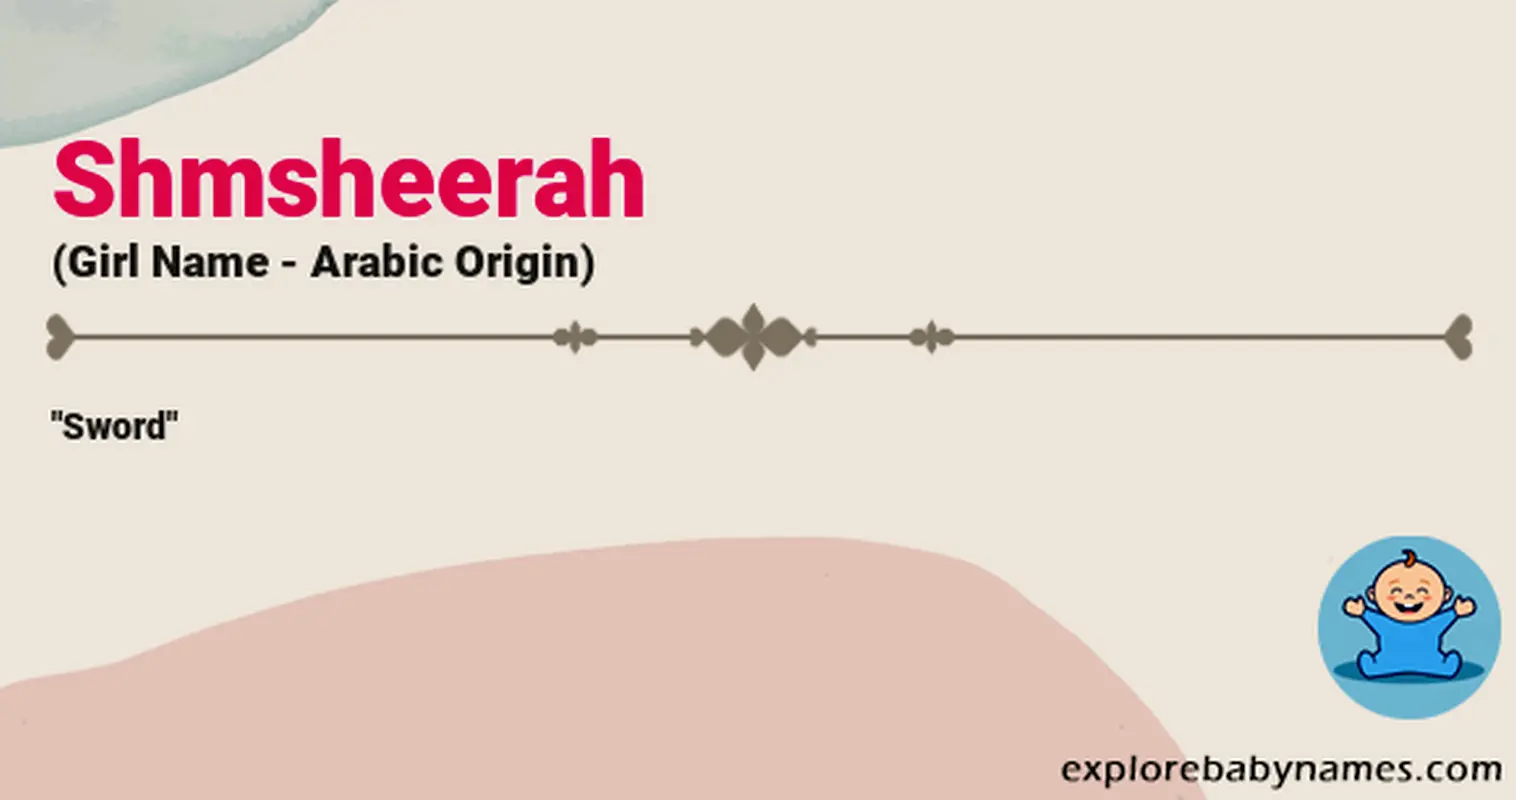 Meaning of Shmsheerah